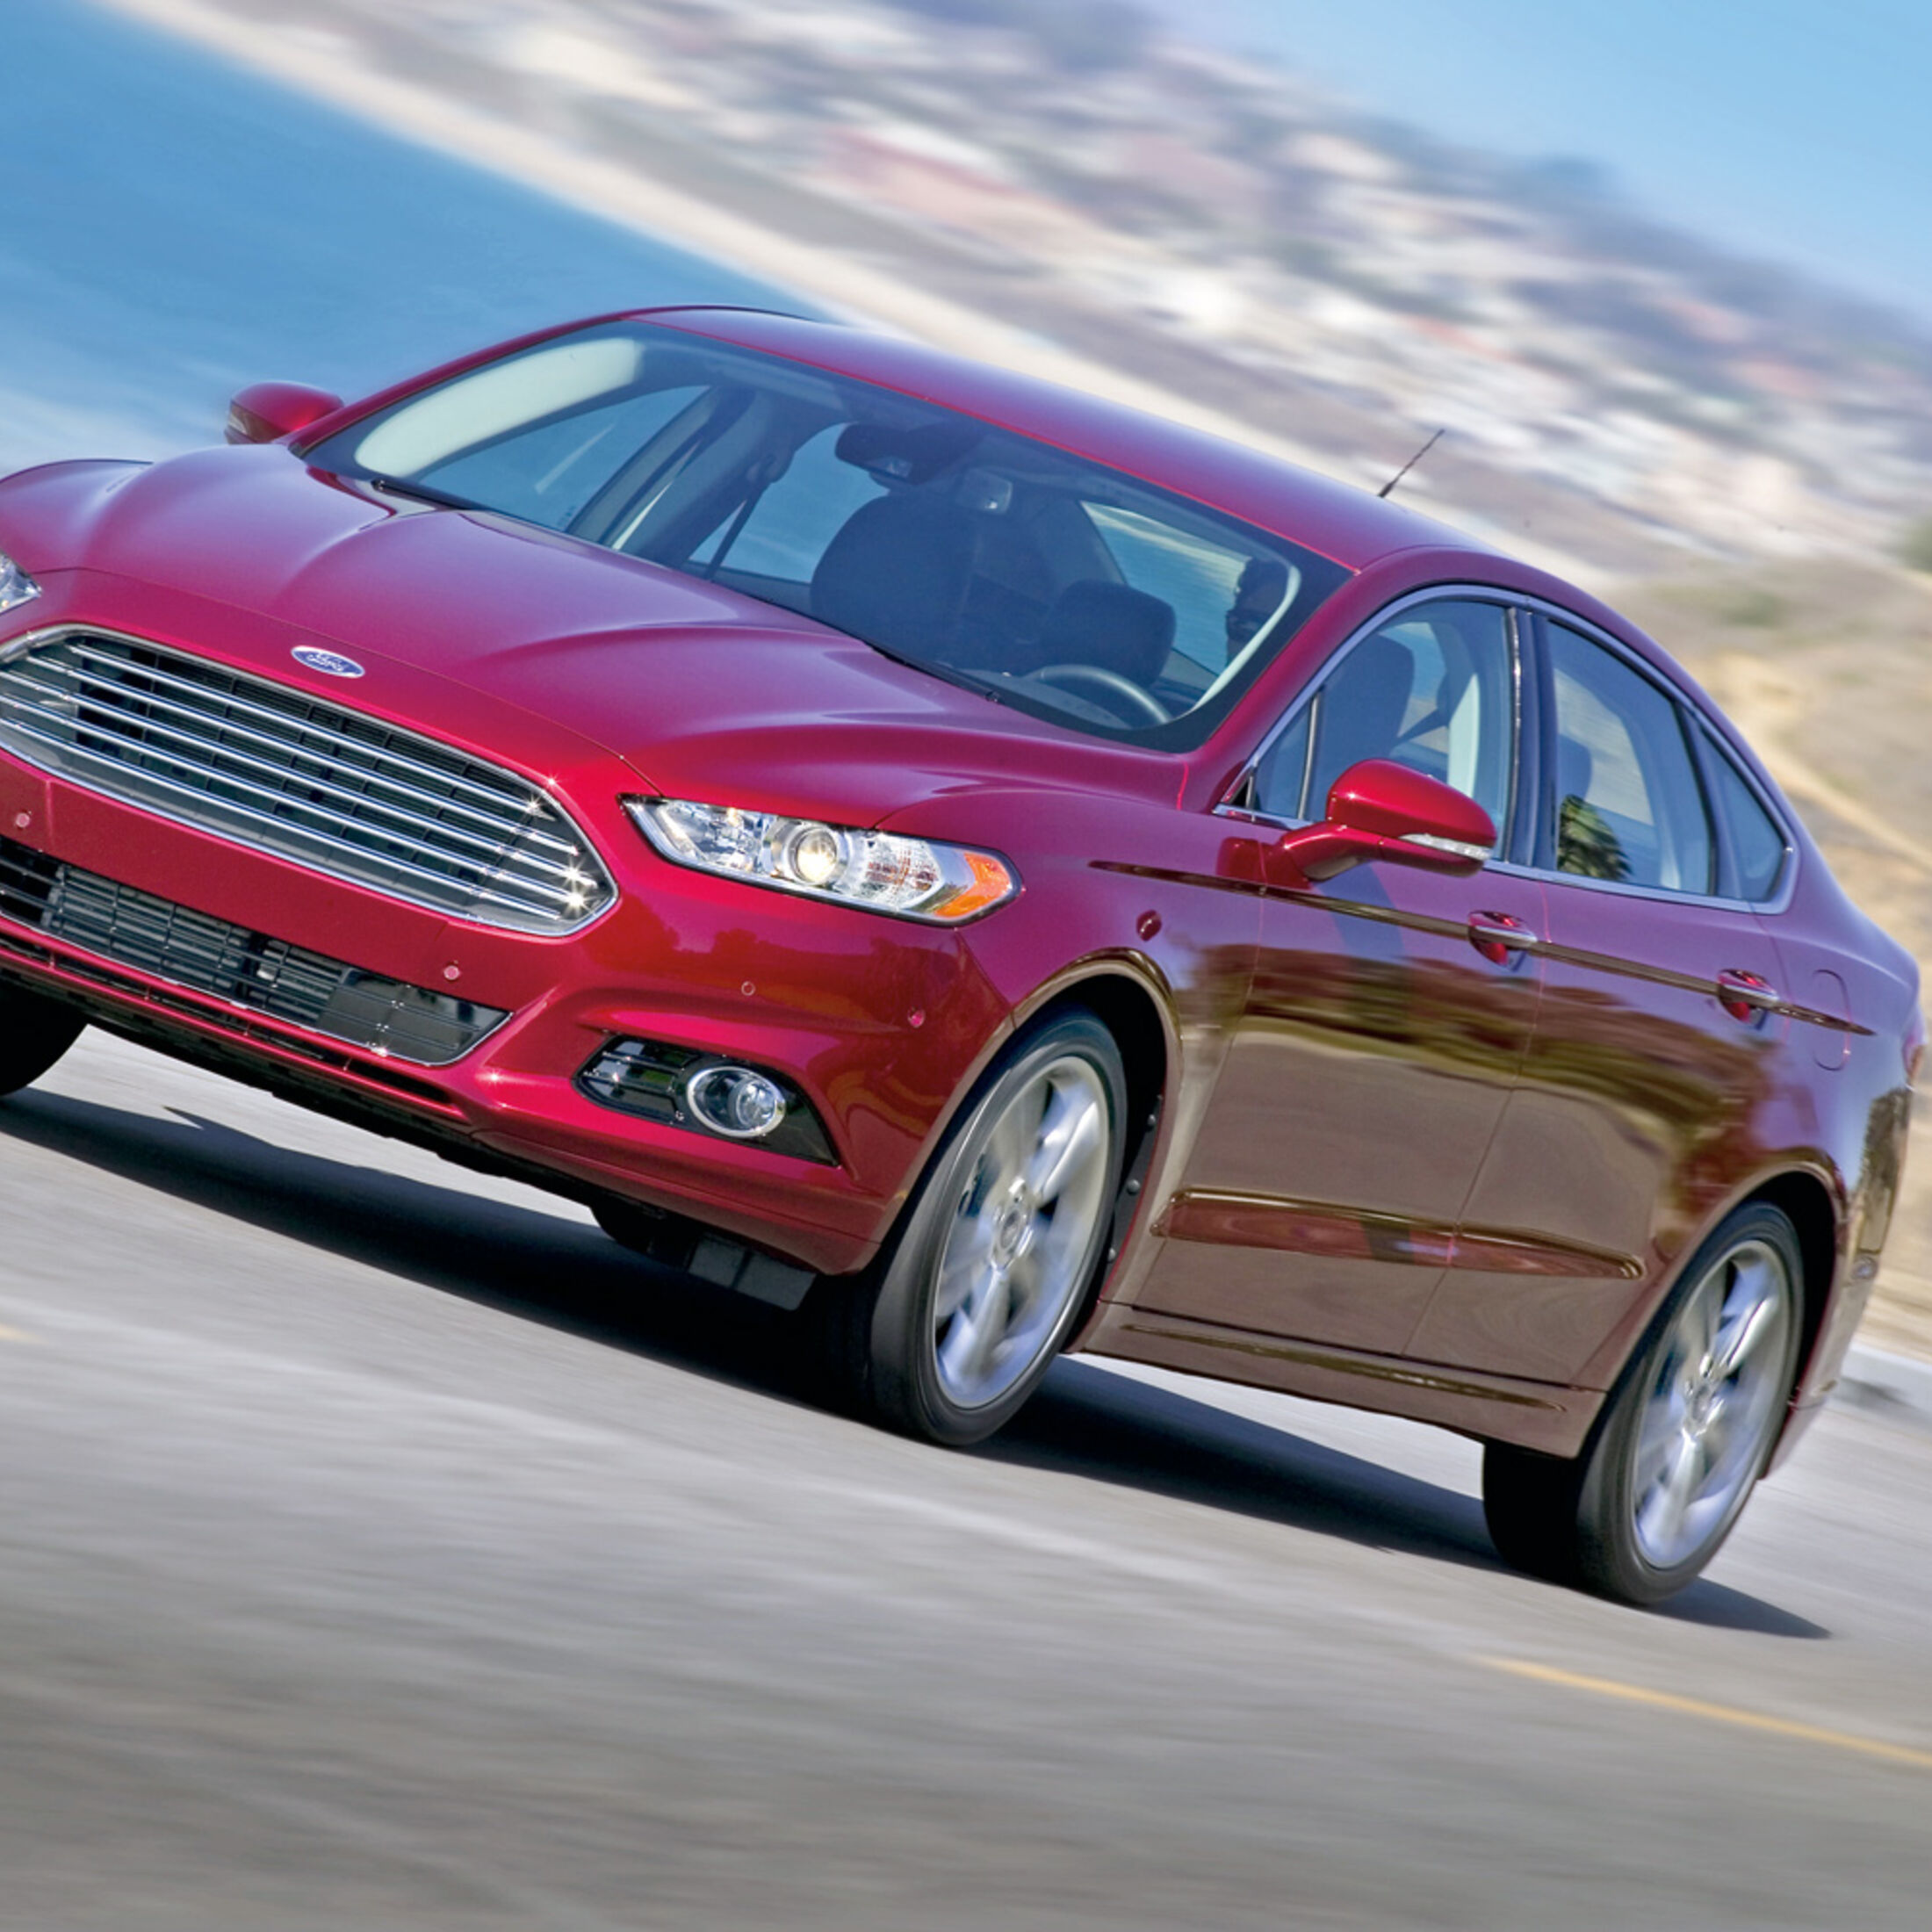 Ford Fusion im Fahrbericht: Der 80-Prozent-Mondeo